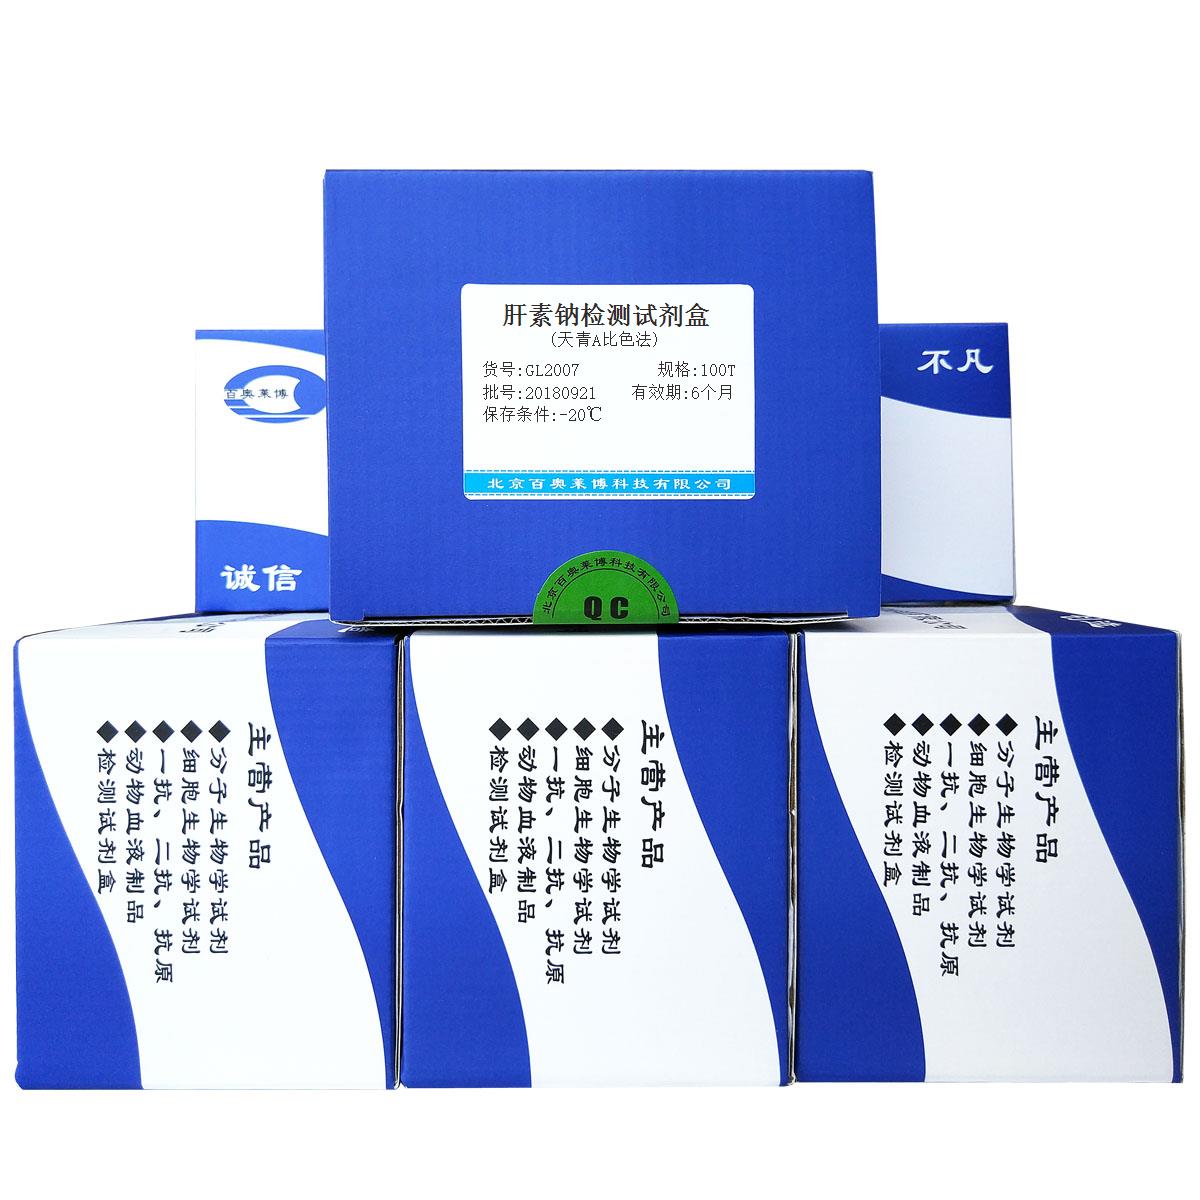 肝素钠检测试剂盒(天青A比色法)